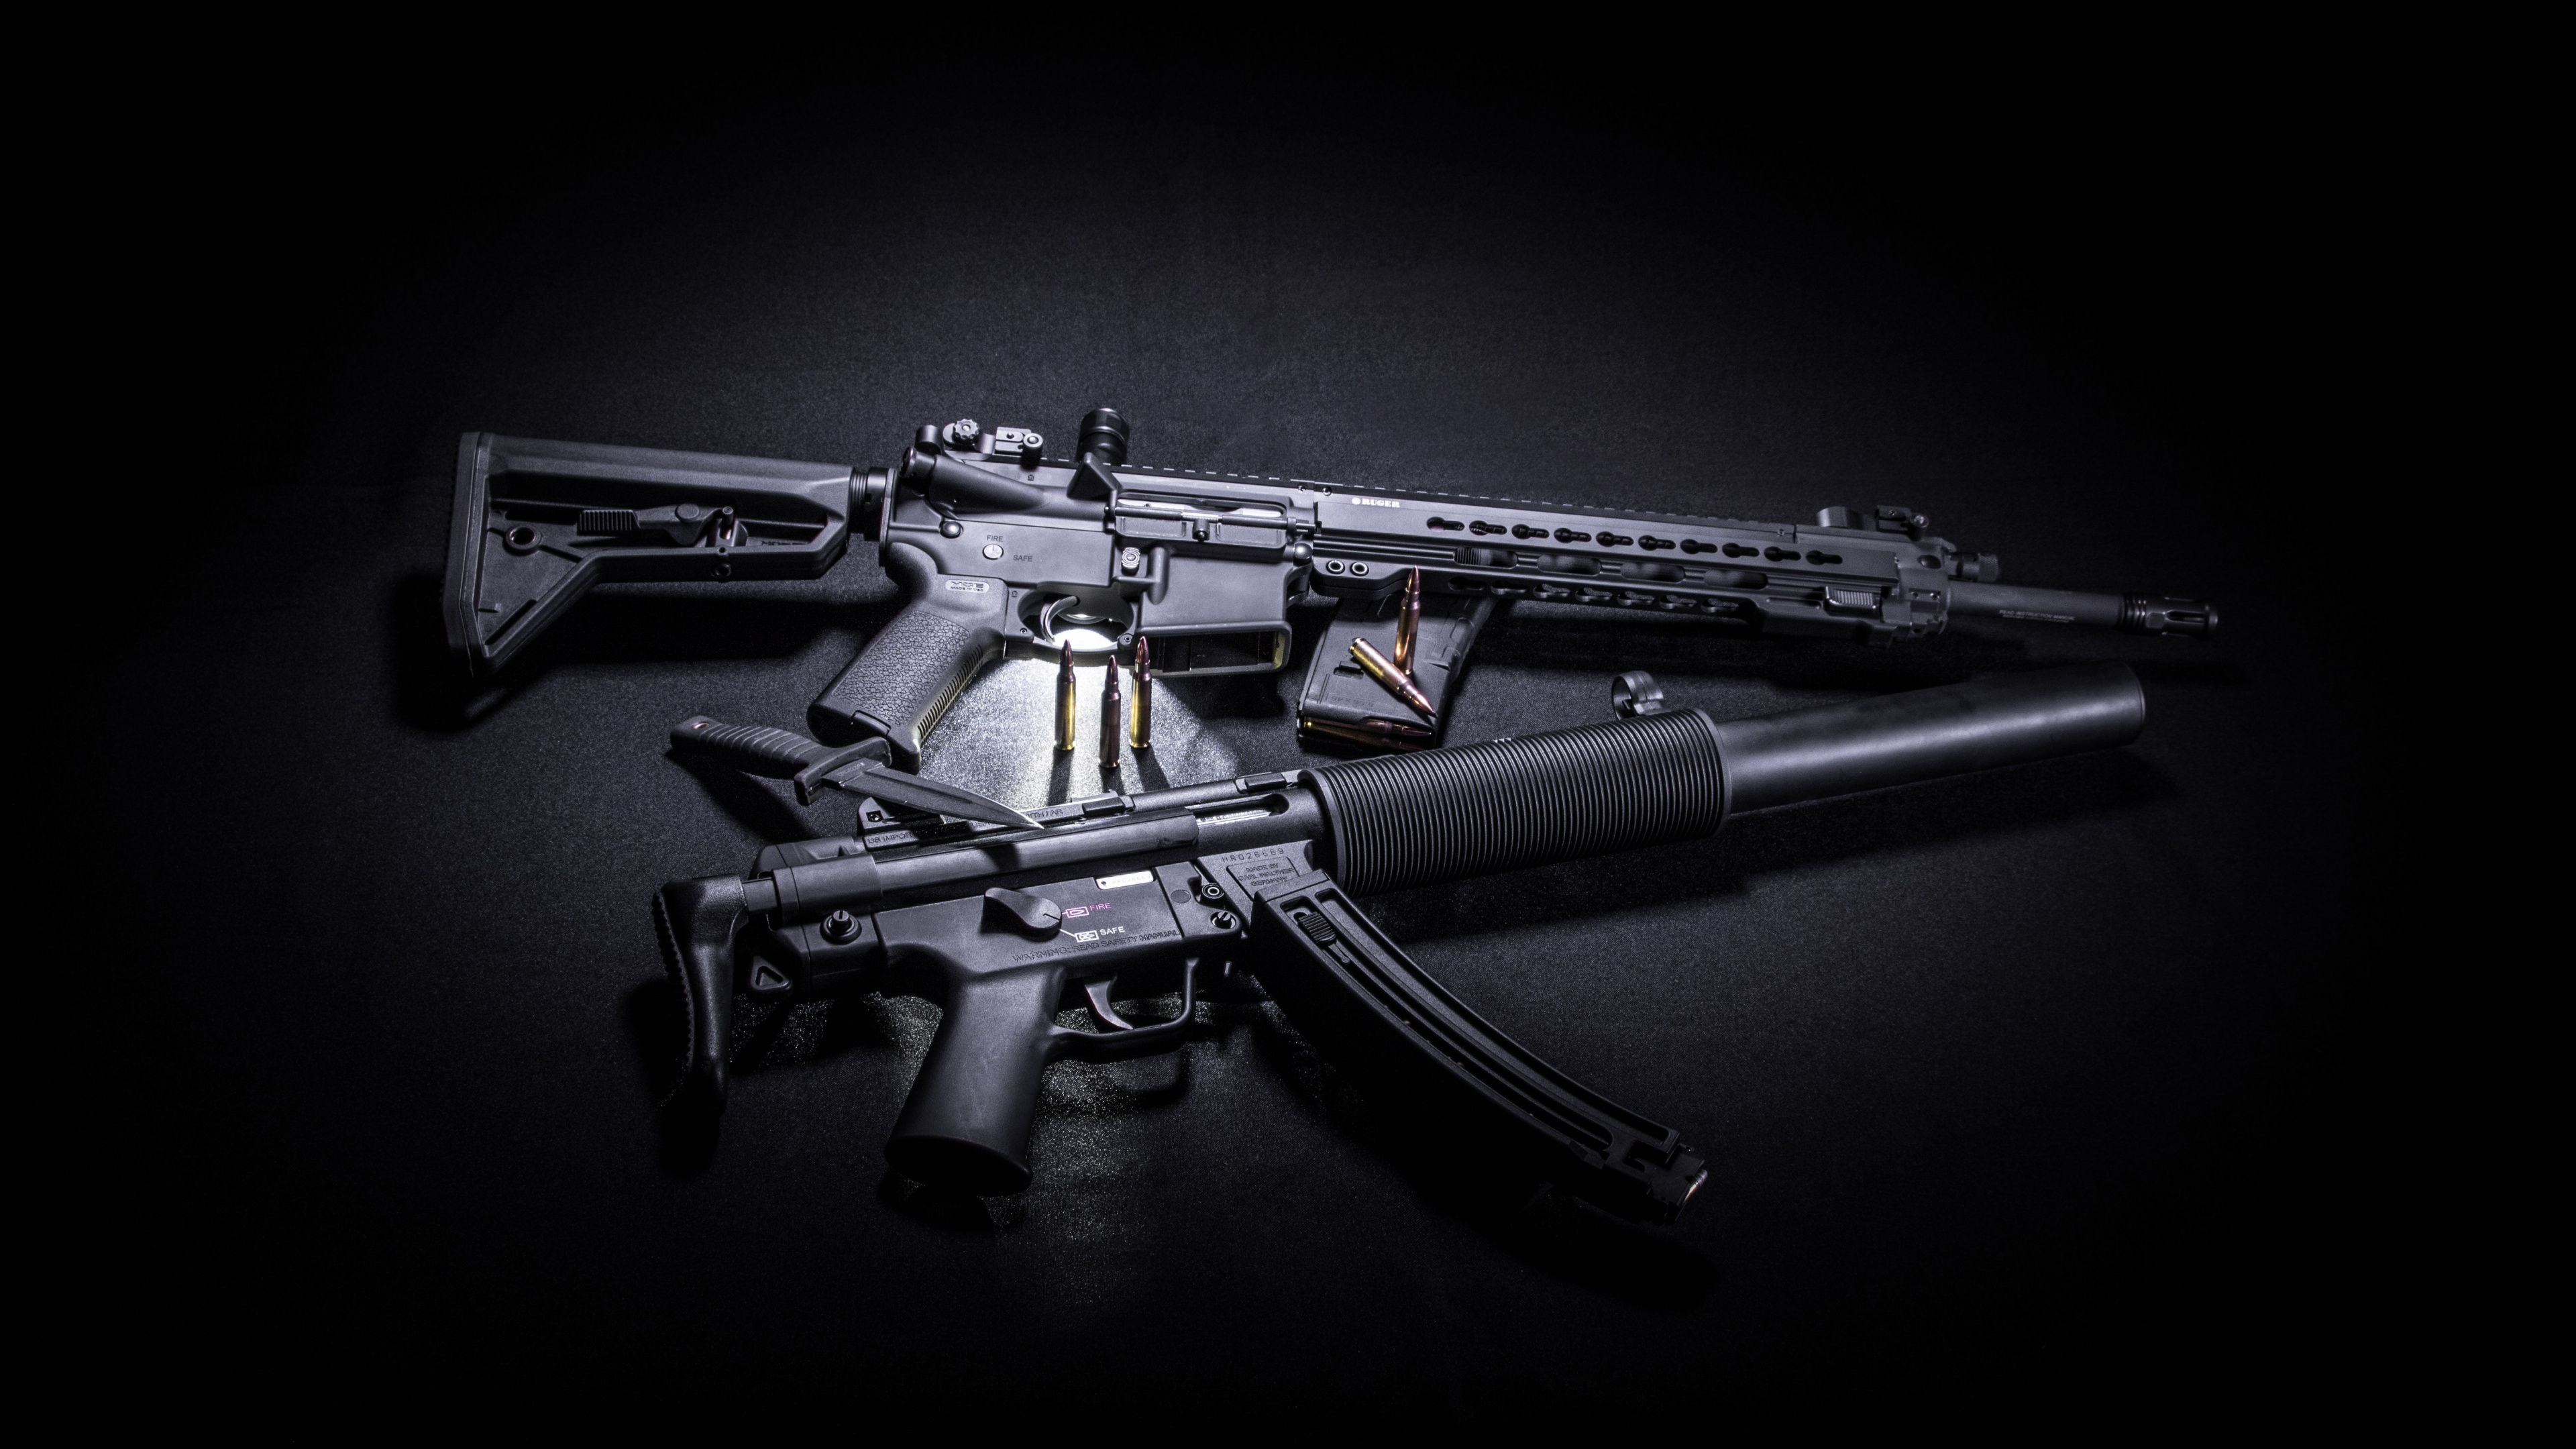 Feuerwaffe, STURMGEWEHR, Trigger, Gun Barrel, Maschinengewehr. Wallpaper in 3840x2160 Resolution